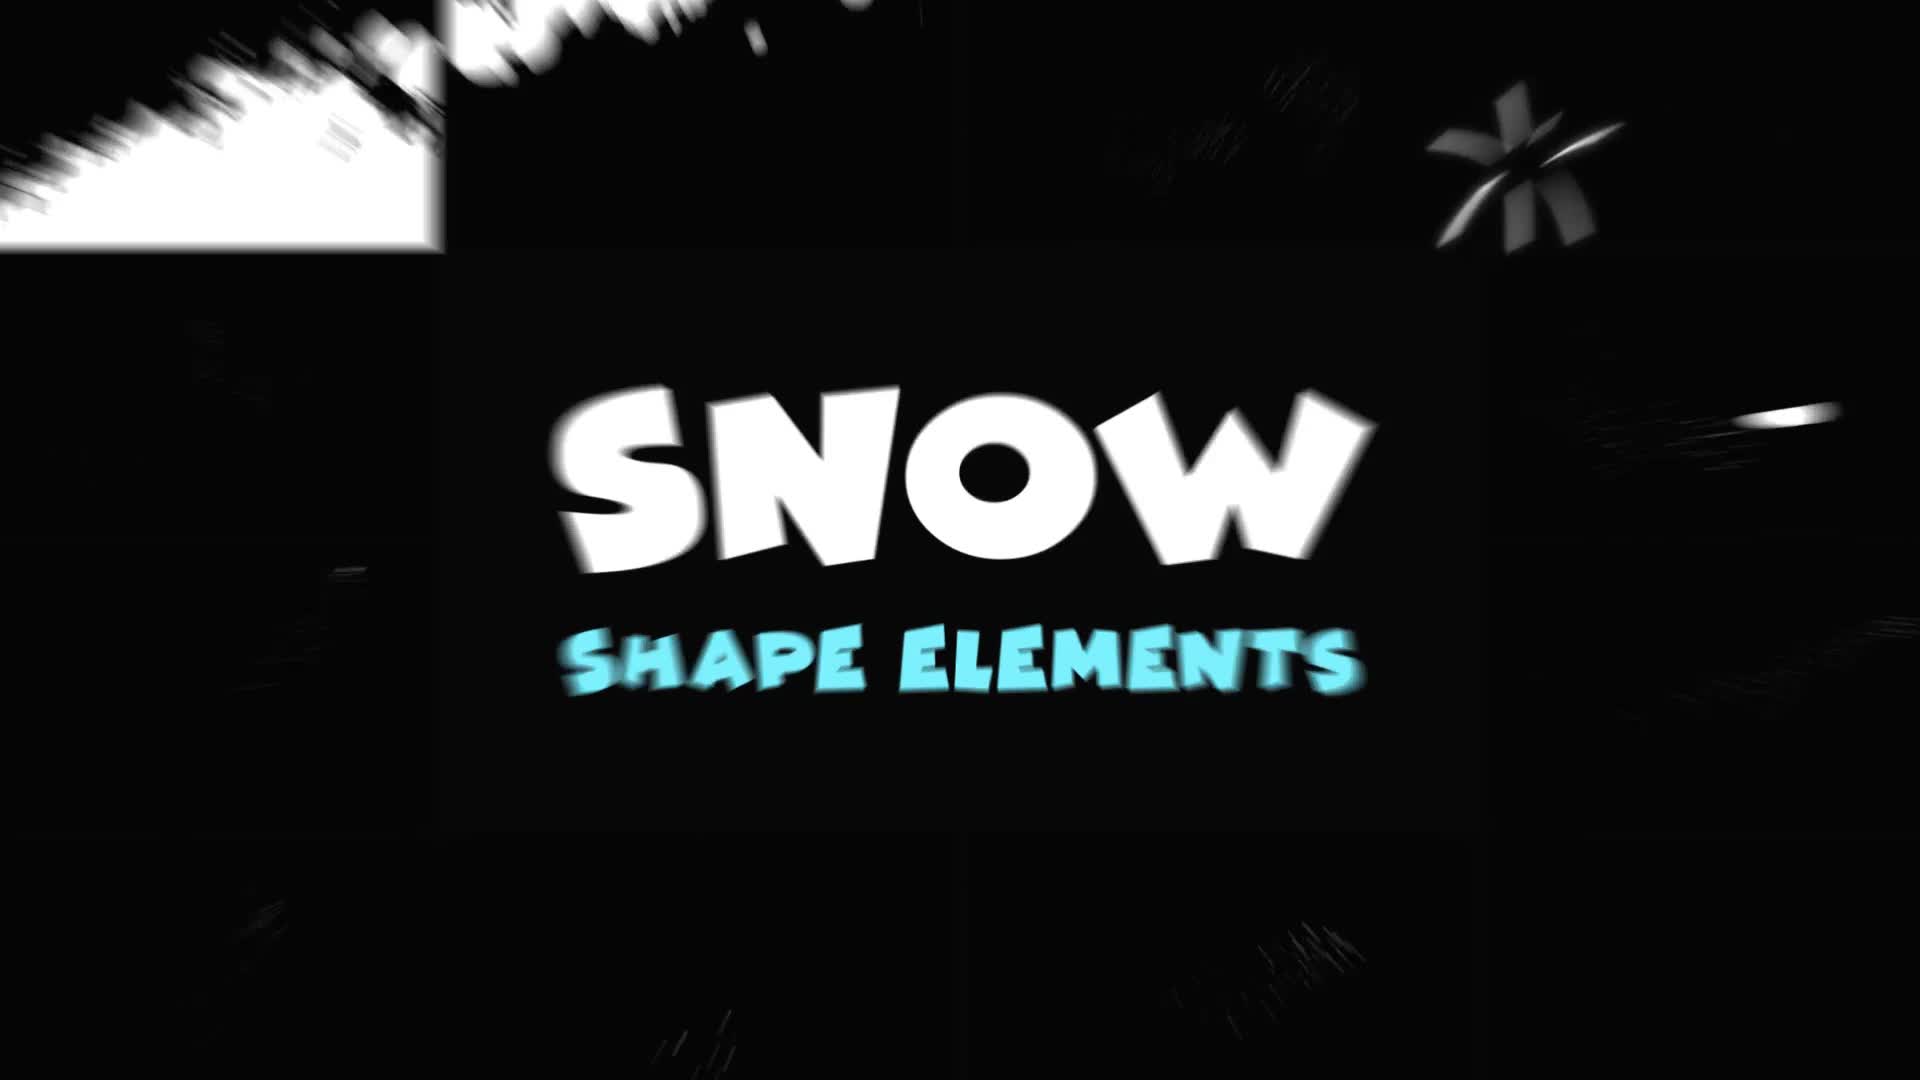 Magic Snow Elements | Premiere Pro MOGRT Videohive 29656735 Premiere Pro Image 2